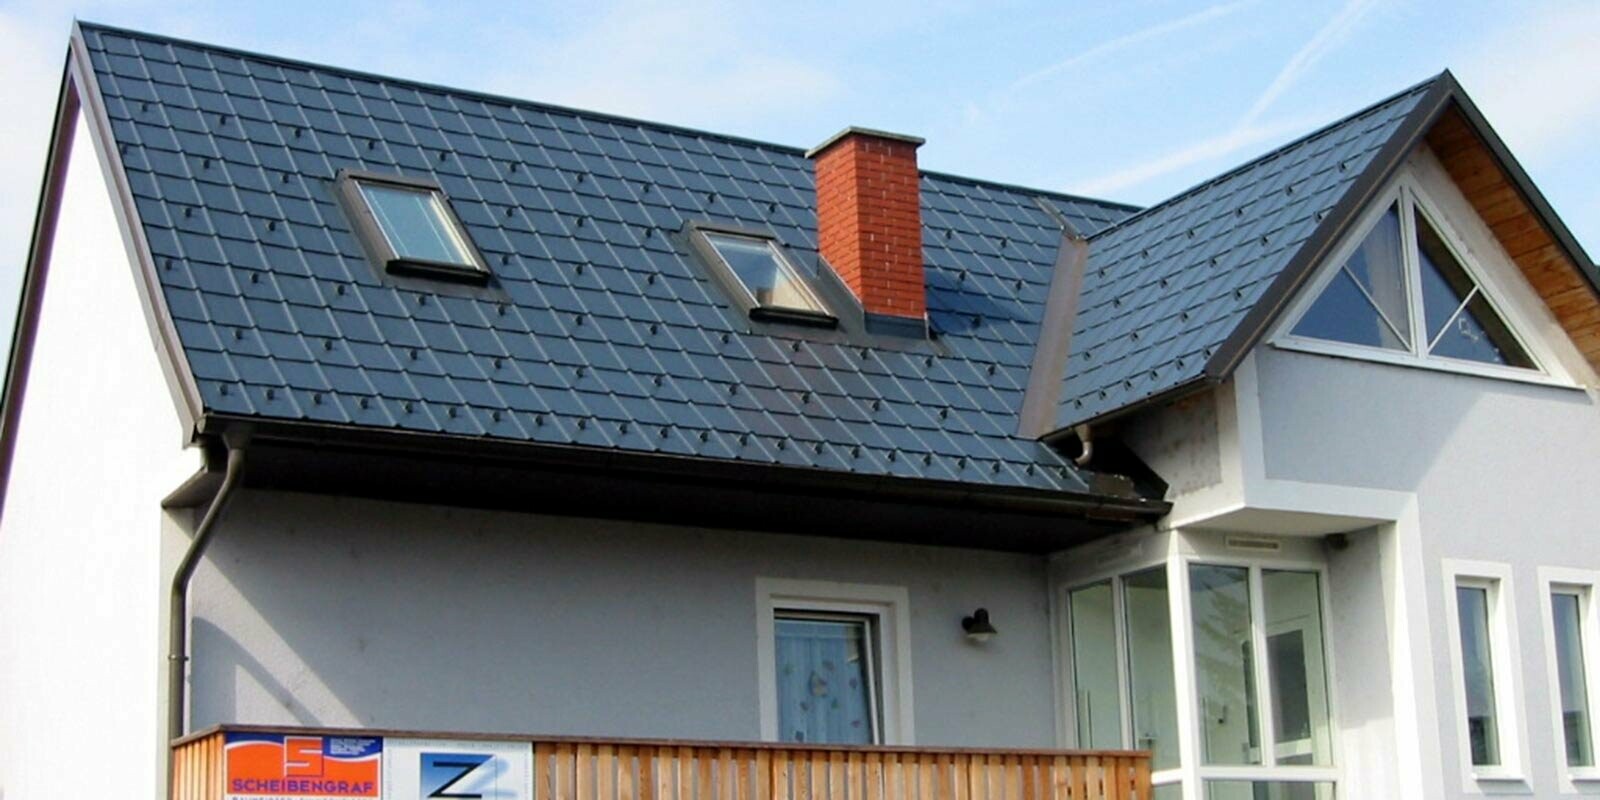 Maison individuelle avec toit à deux pans et façade bleue, toit récemment rénové par PREFA